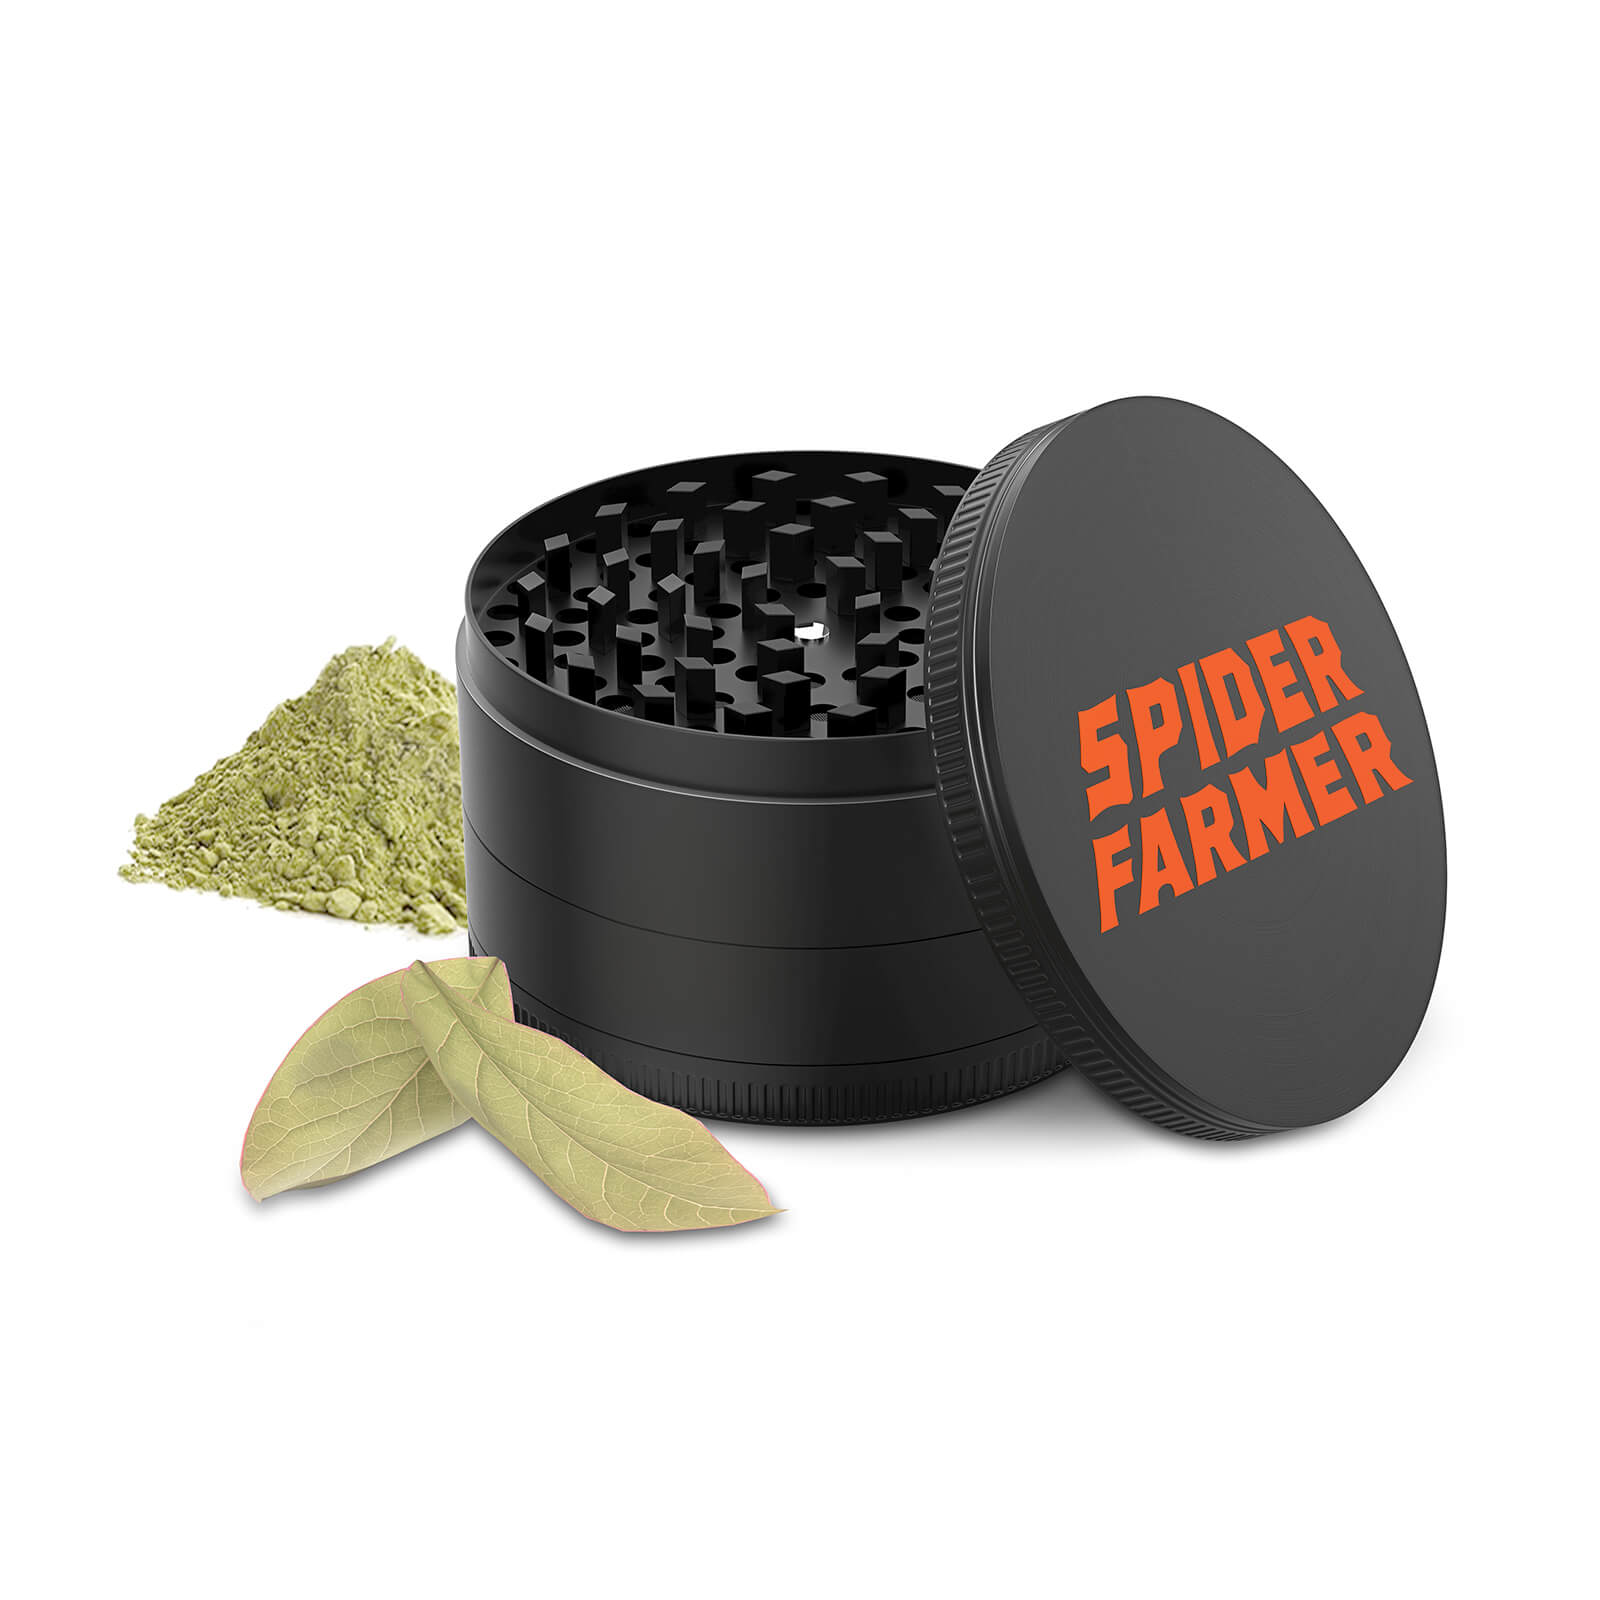 Spice or Herb grinder